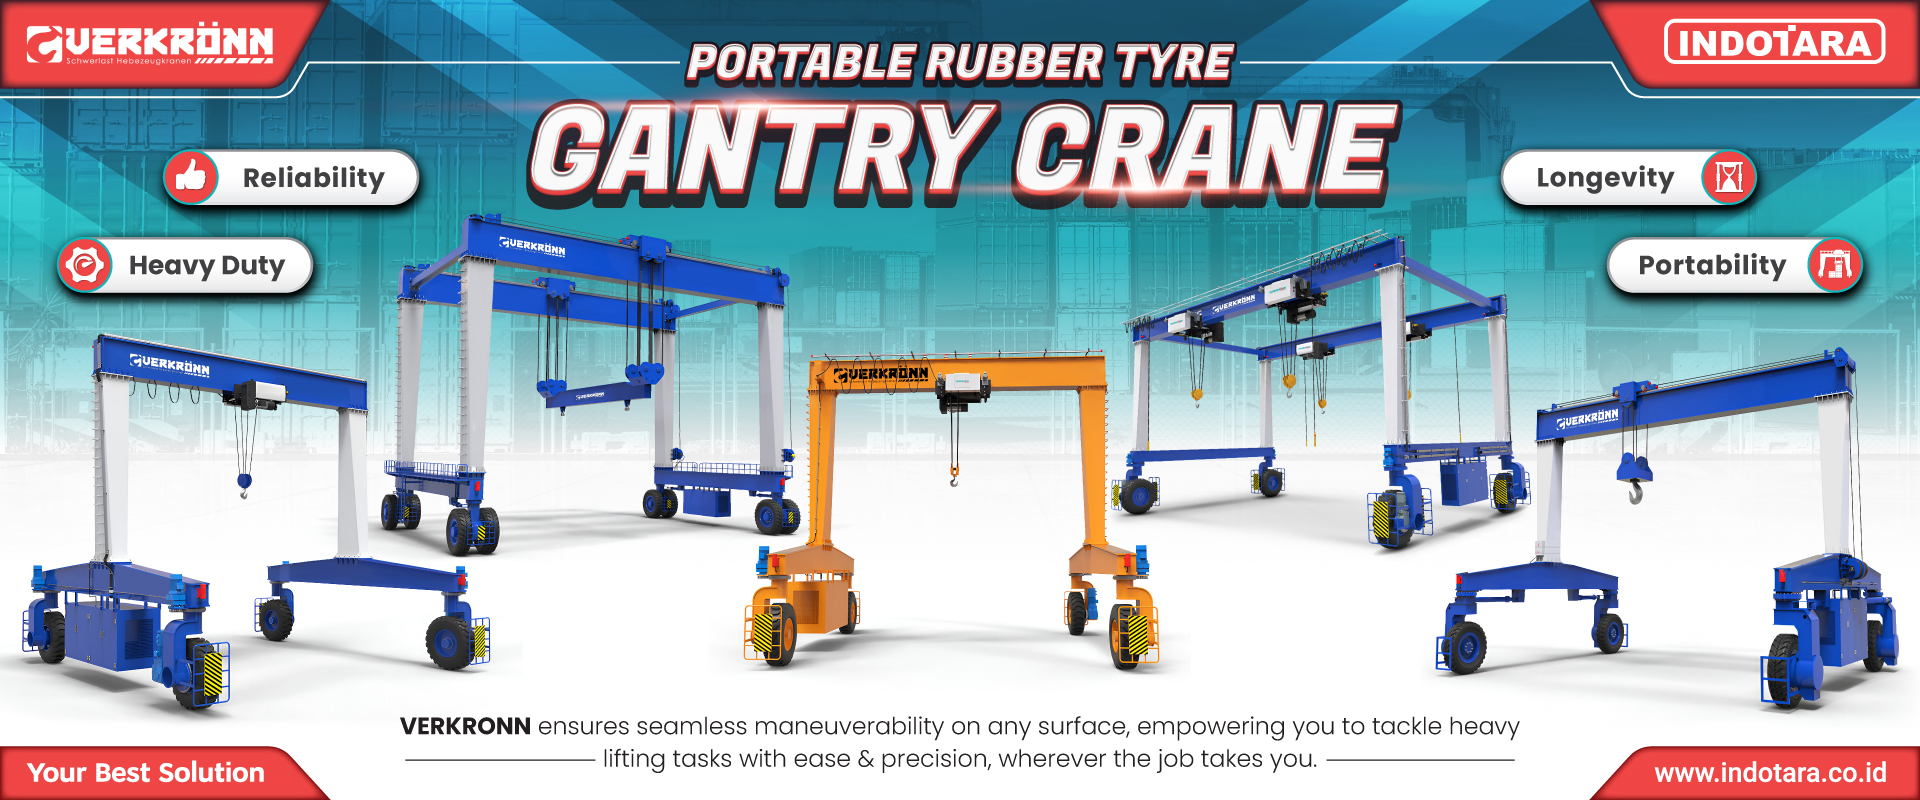 Verkronn Portable Rubber Tyre Gantry Crane